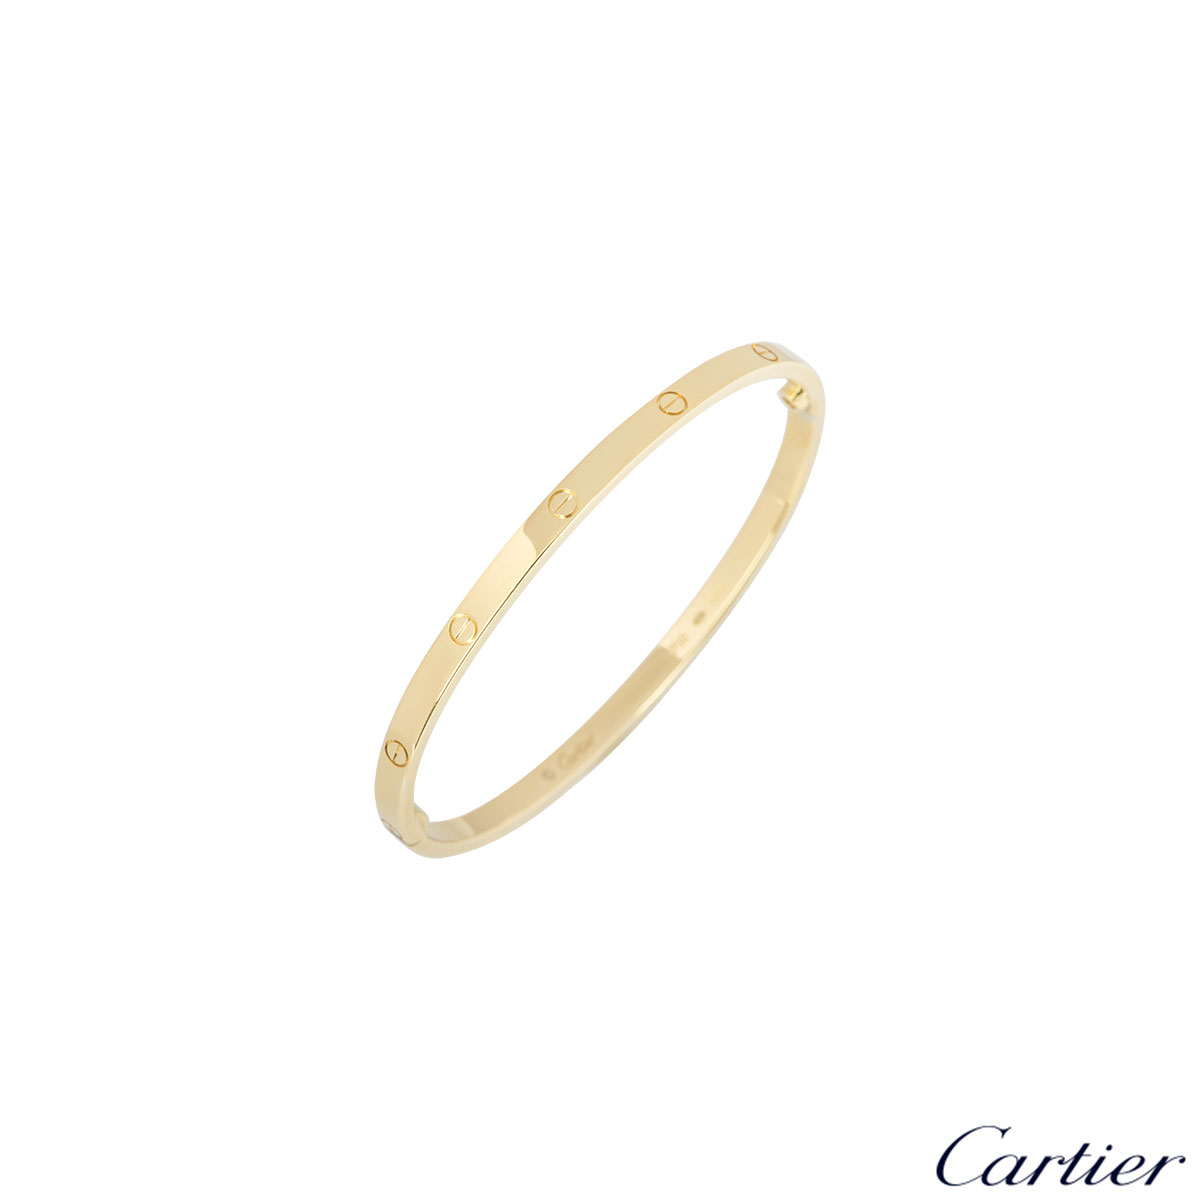 cartier love bracelet size 16 weight